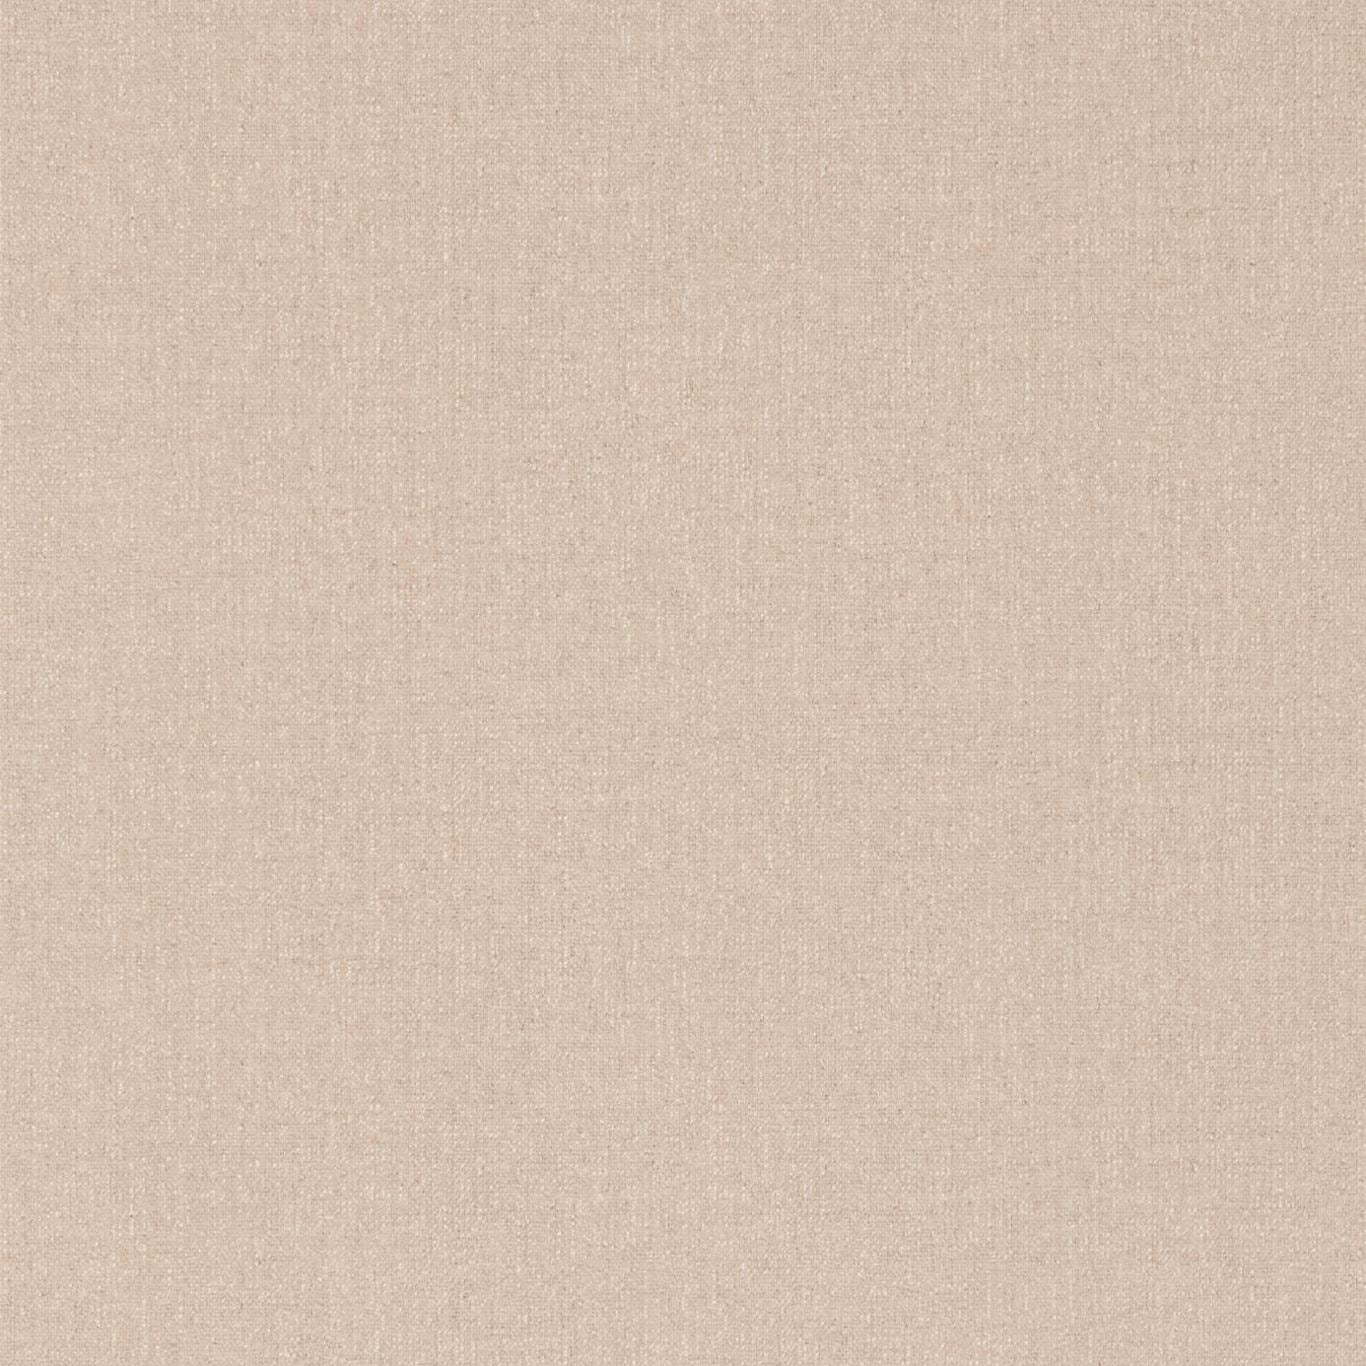 Soho Plain Linen Wallpaper DSOH215448 by Sanderson